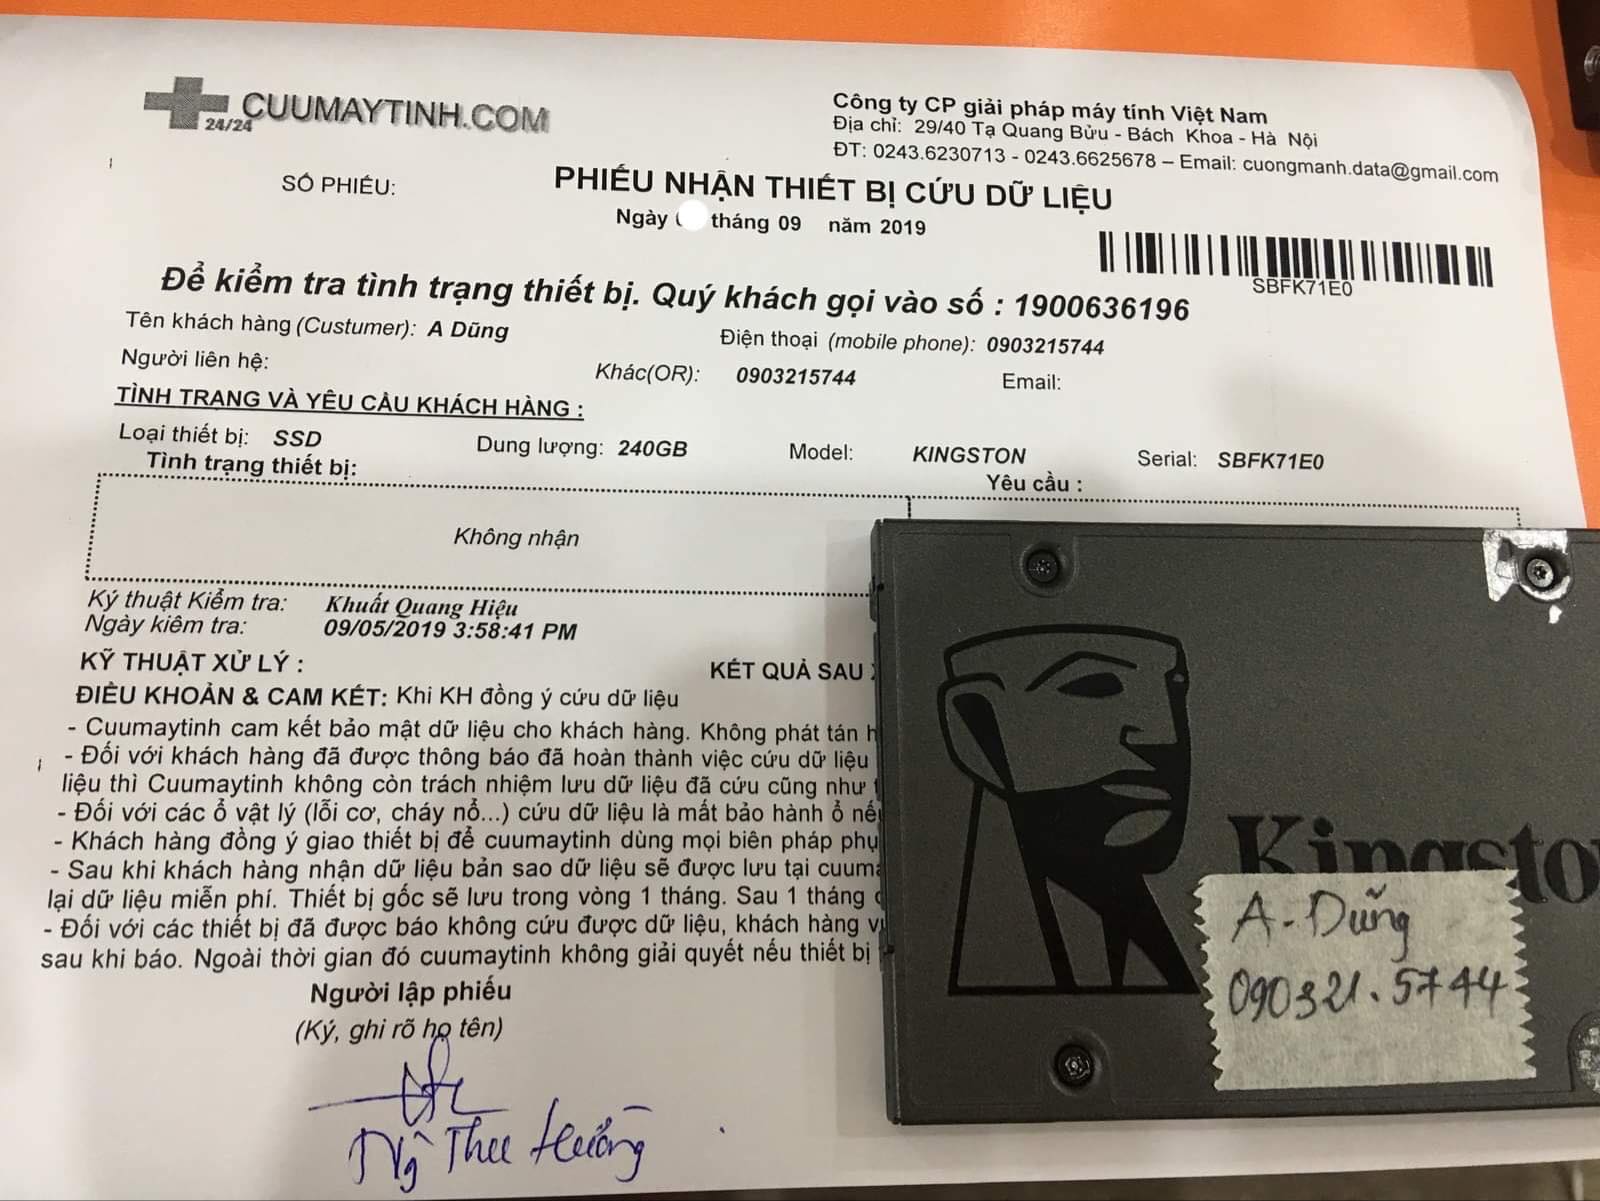 Cứu dữ liệu ổ cứng SSD Kingston 240GB không nhận 11/09/2019 - cuumaytinh